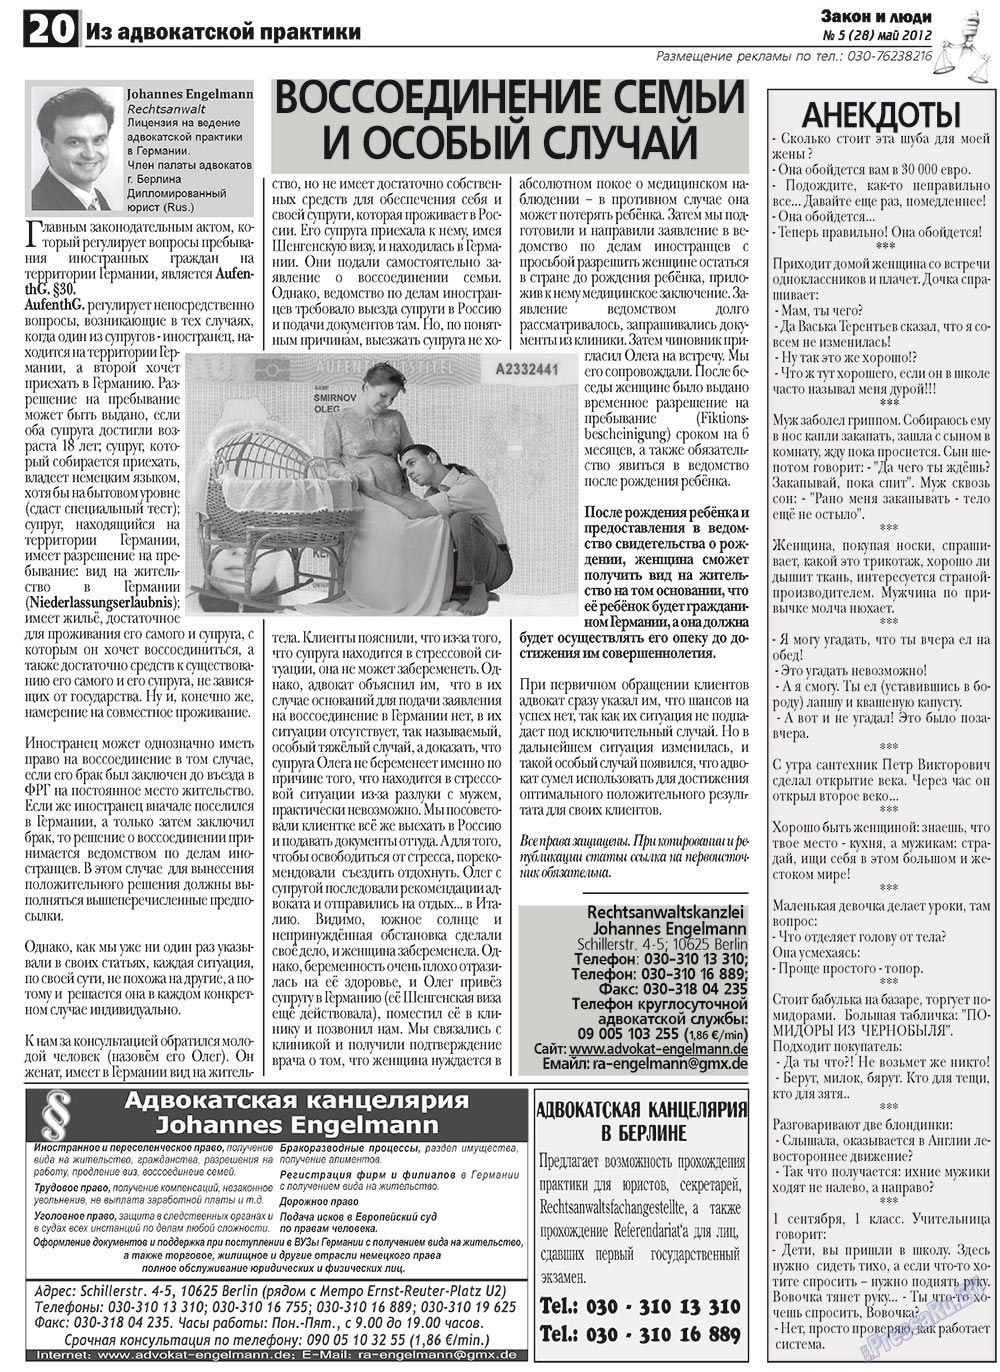 Закон и люди, газета. 2012 №5 стр.20